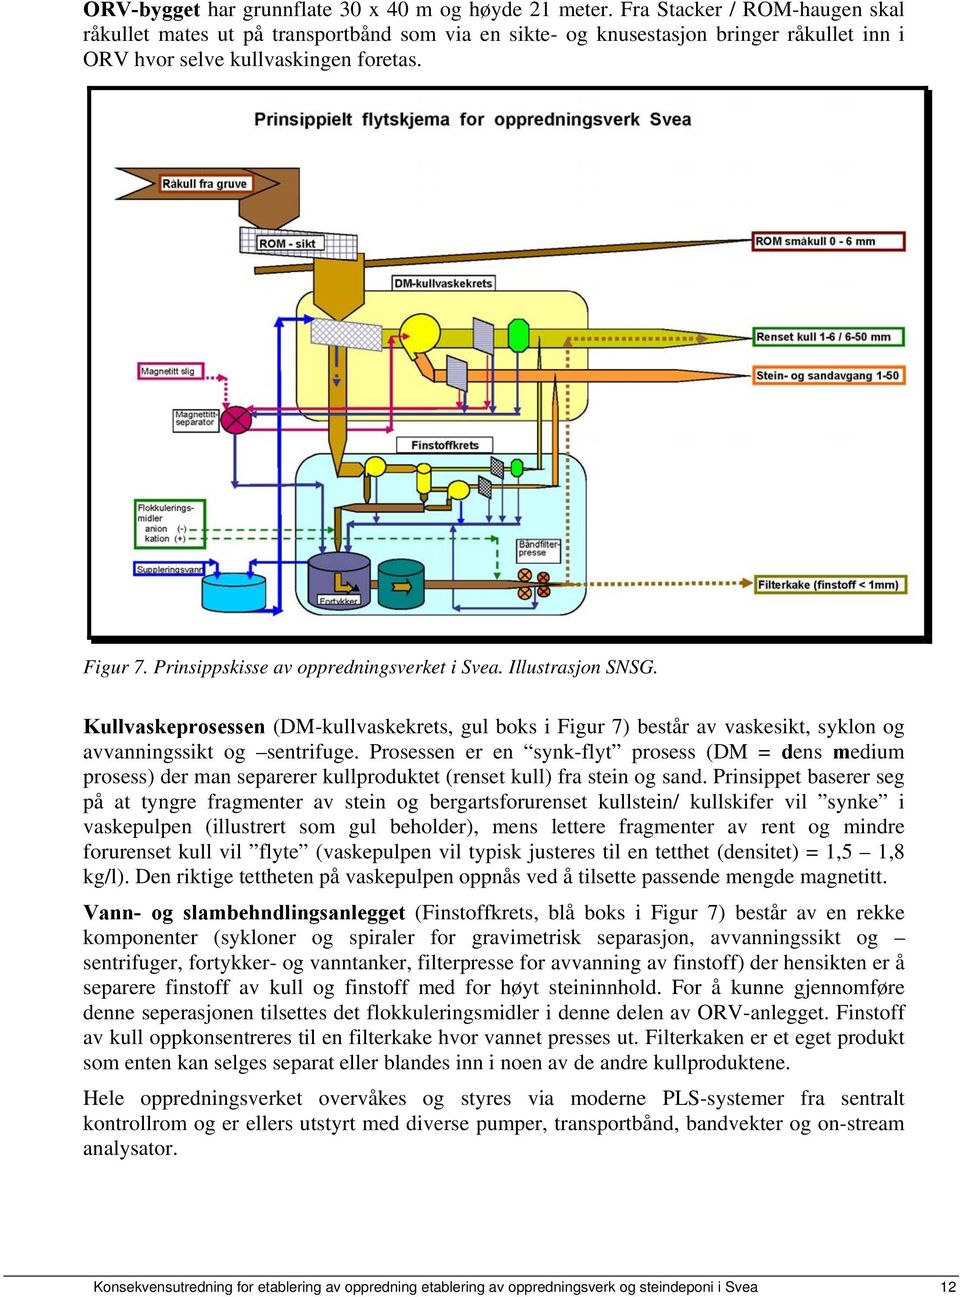 Prinsippskisse av oppredningsverket i Svea. Illustrasjon SNSG. Kullvaskeprosessen (DM-kullvaskekrets, gul boks i Figur 7) består av vaskesikt, syklon og avvanningssikt og sentrifuge.